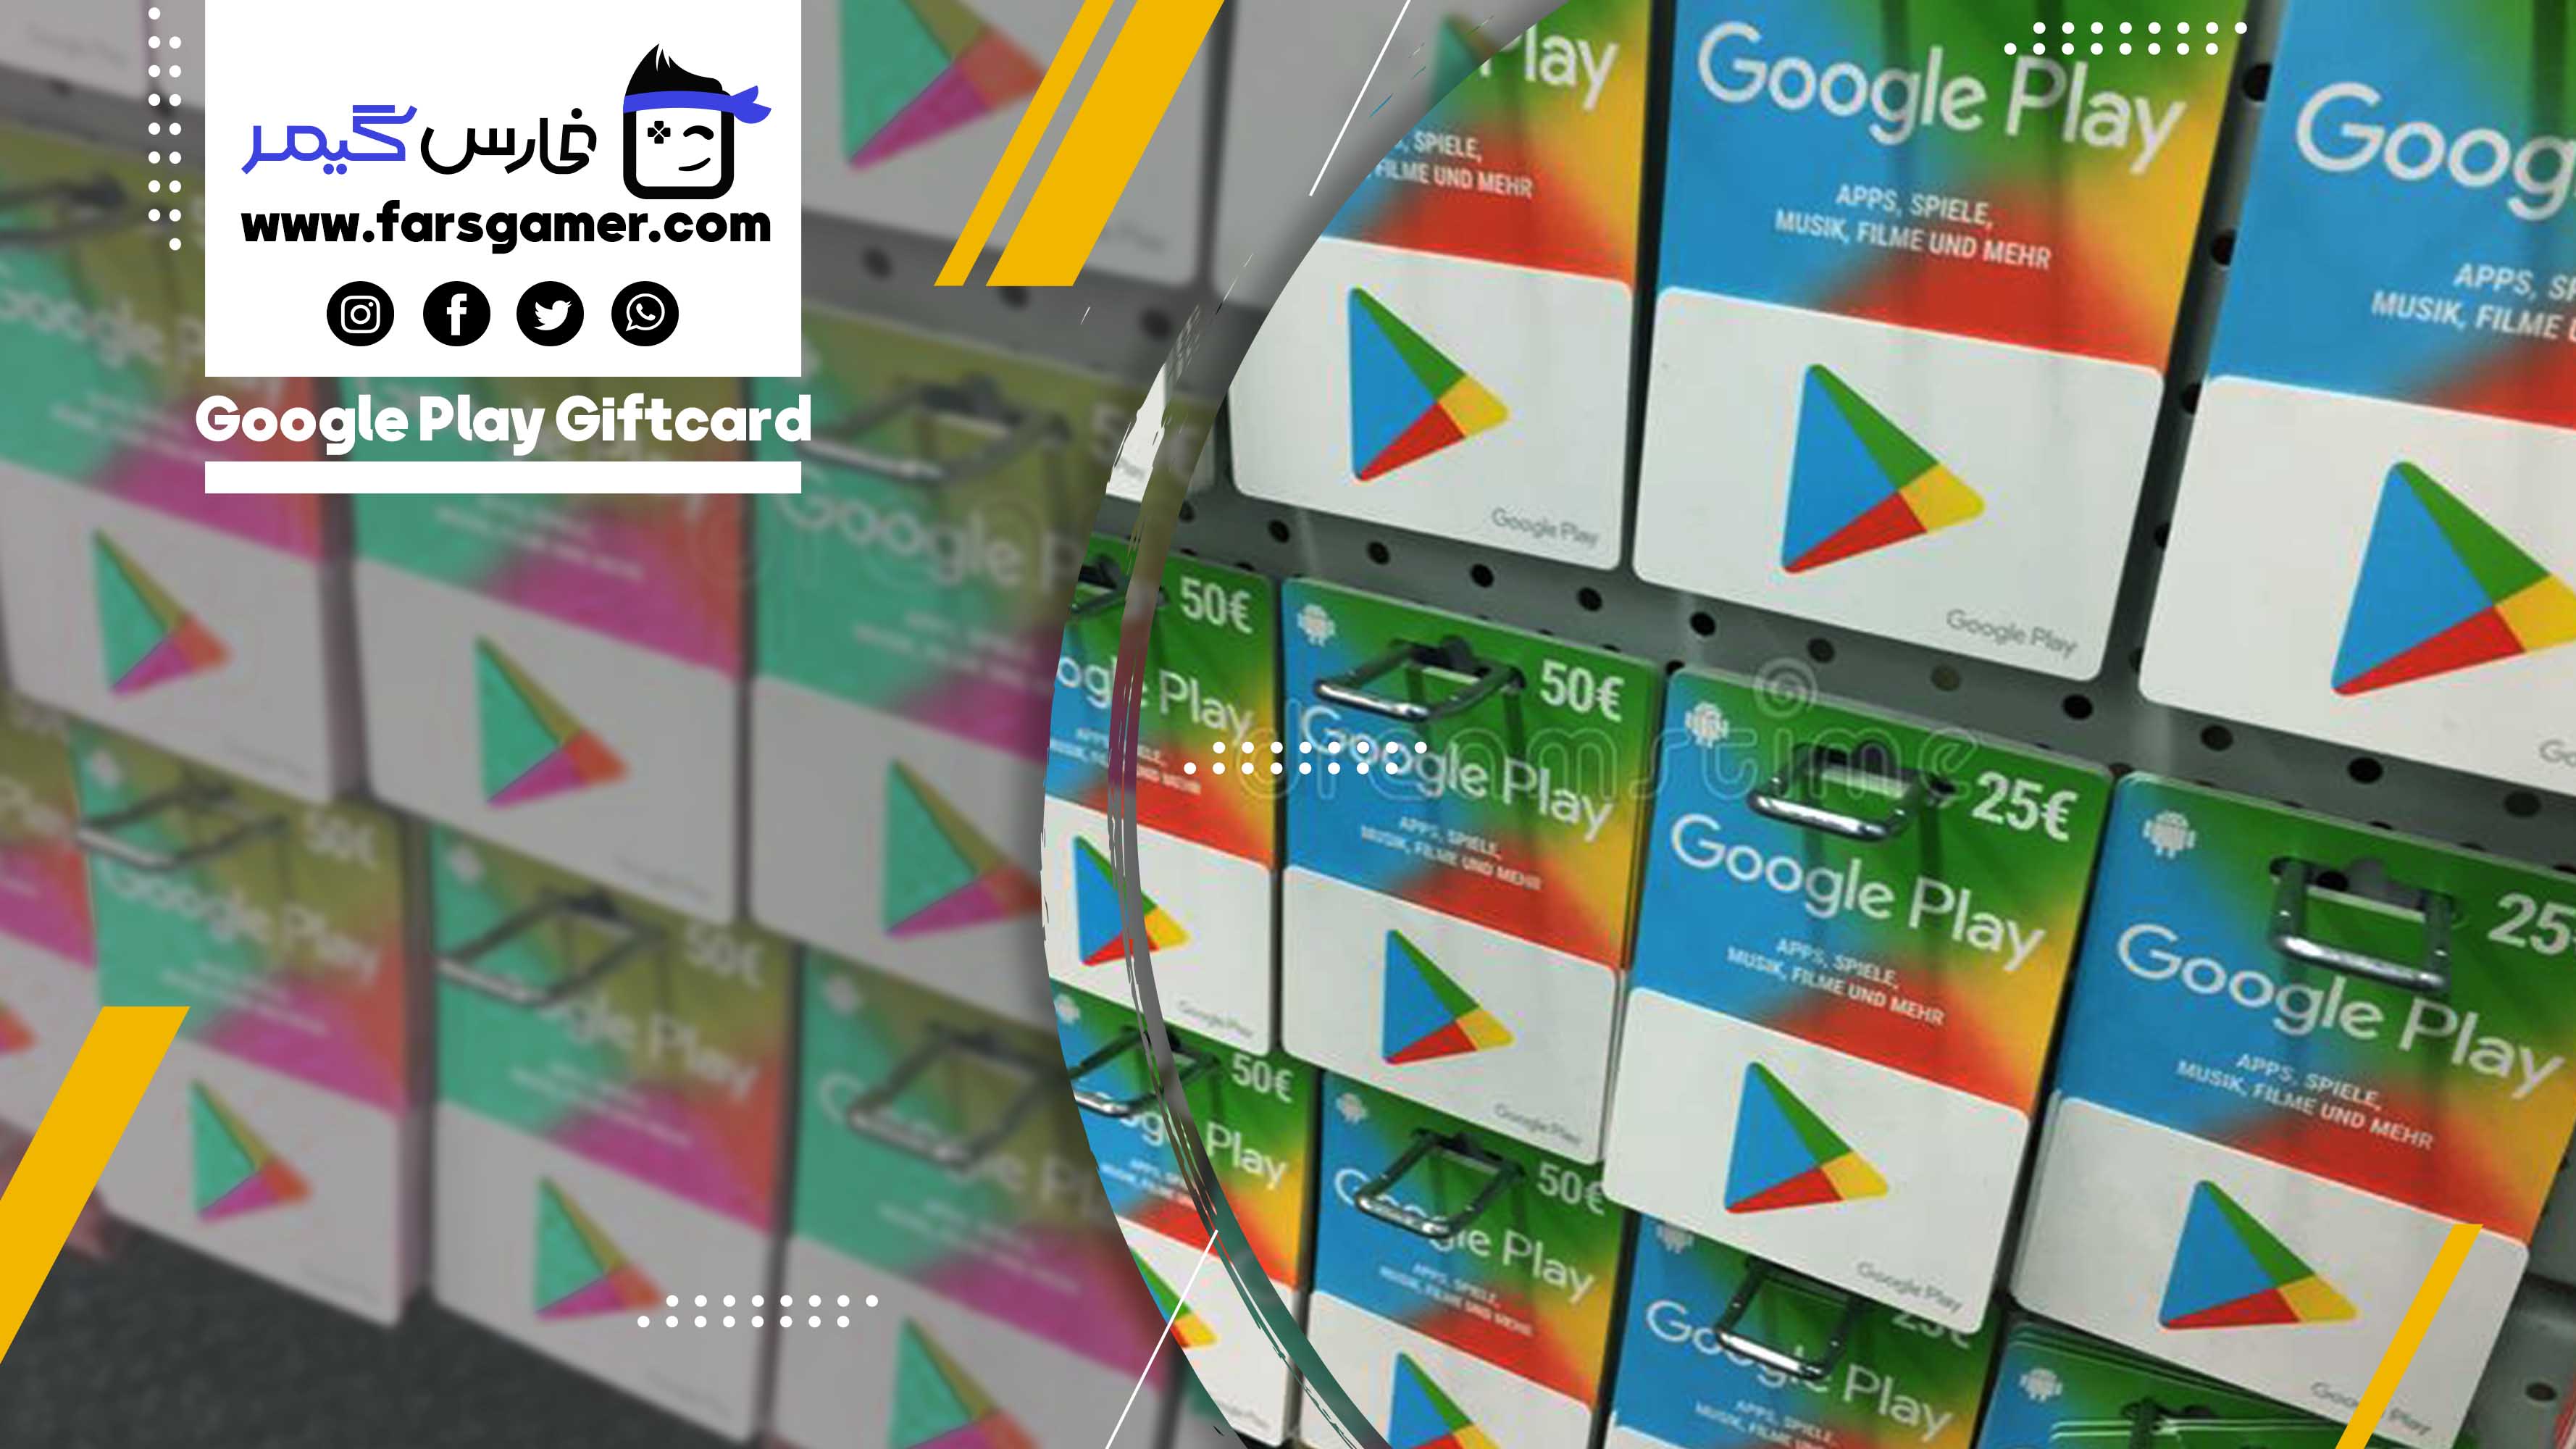 giftcard-googleplay